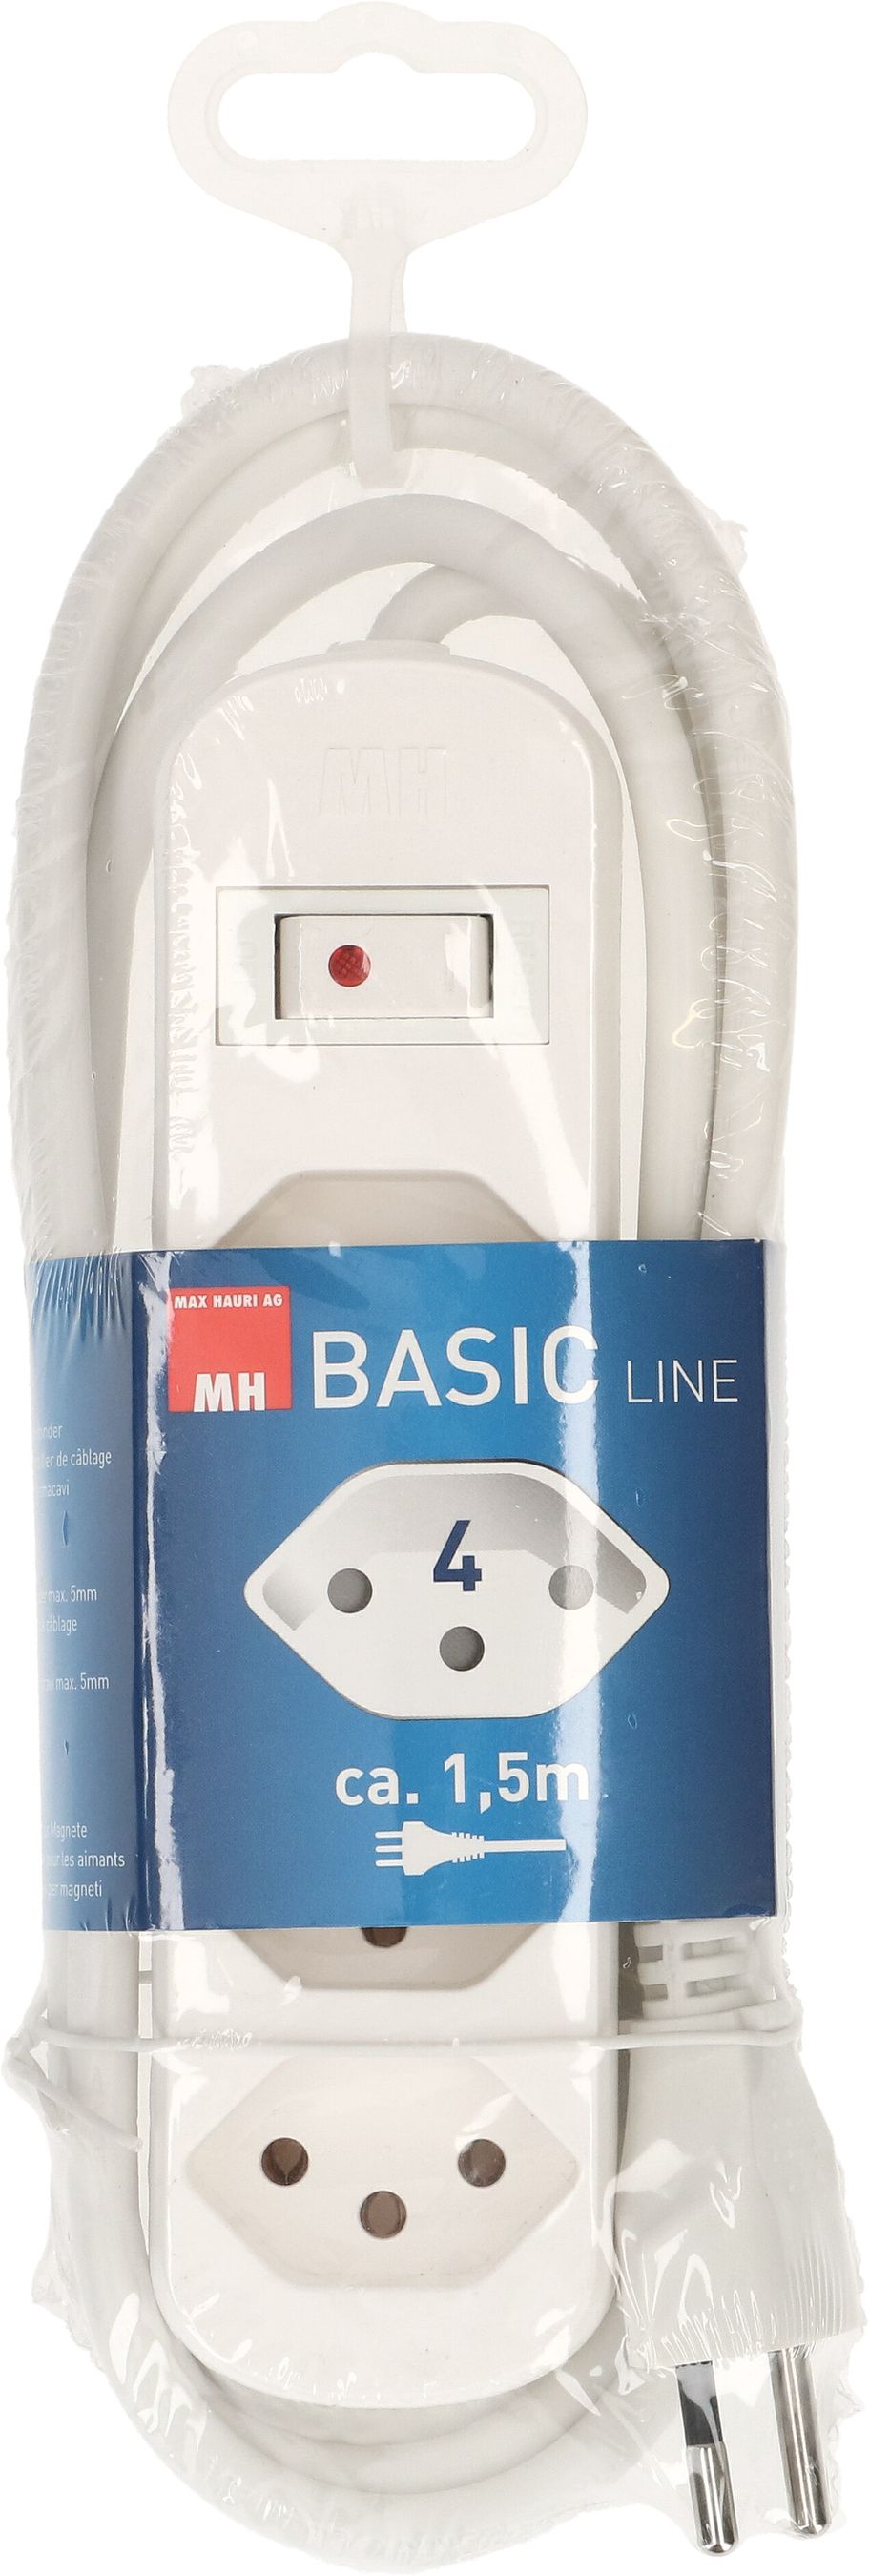 Multiple socket Basic Line 4x type 13